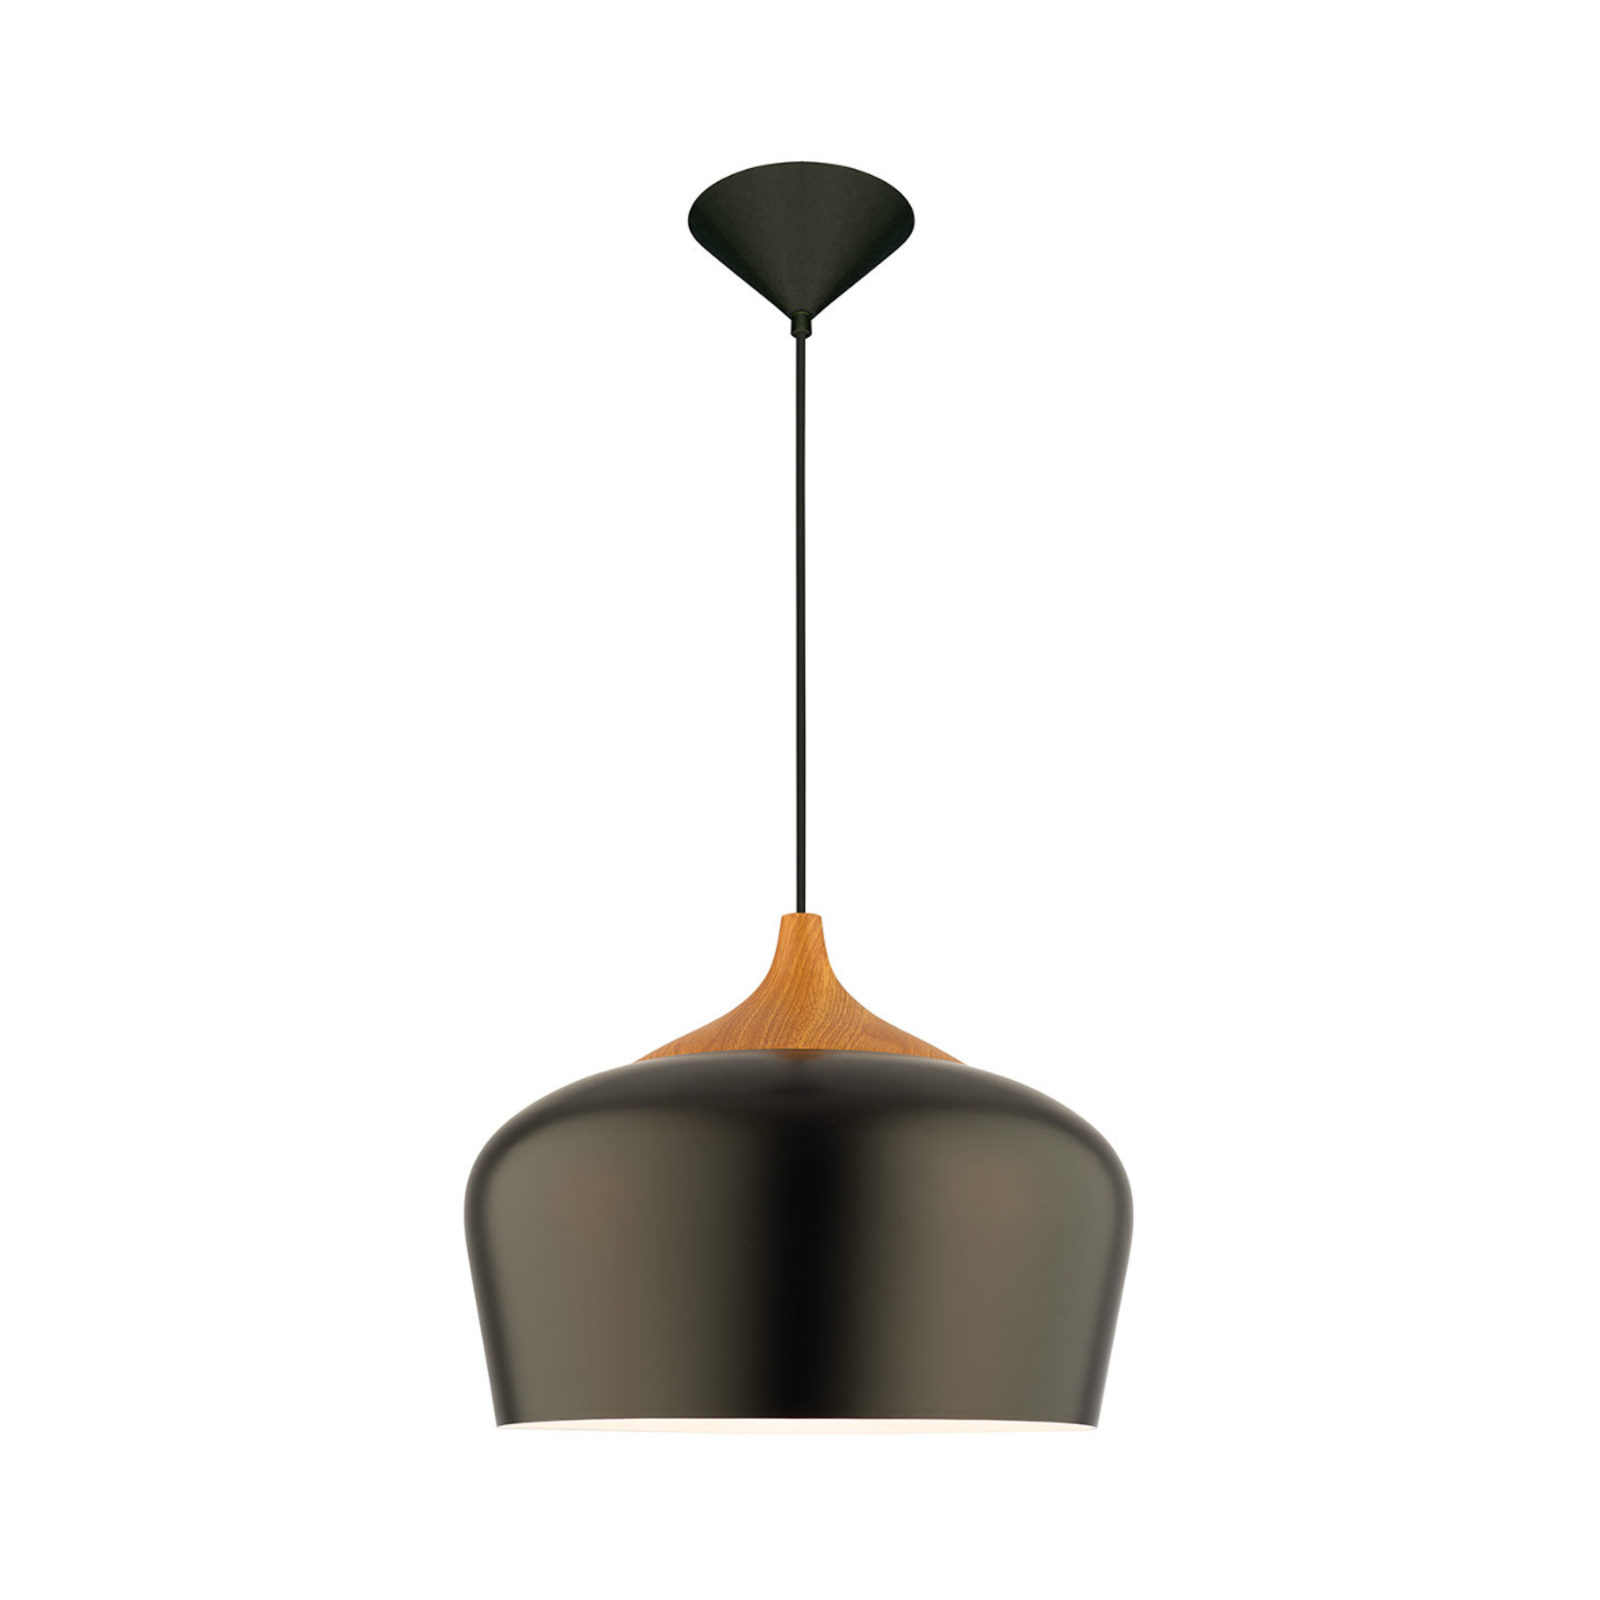 Kovinsko viseče svetilo Voltige v črni barvi